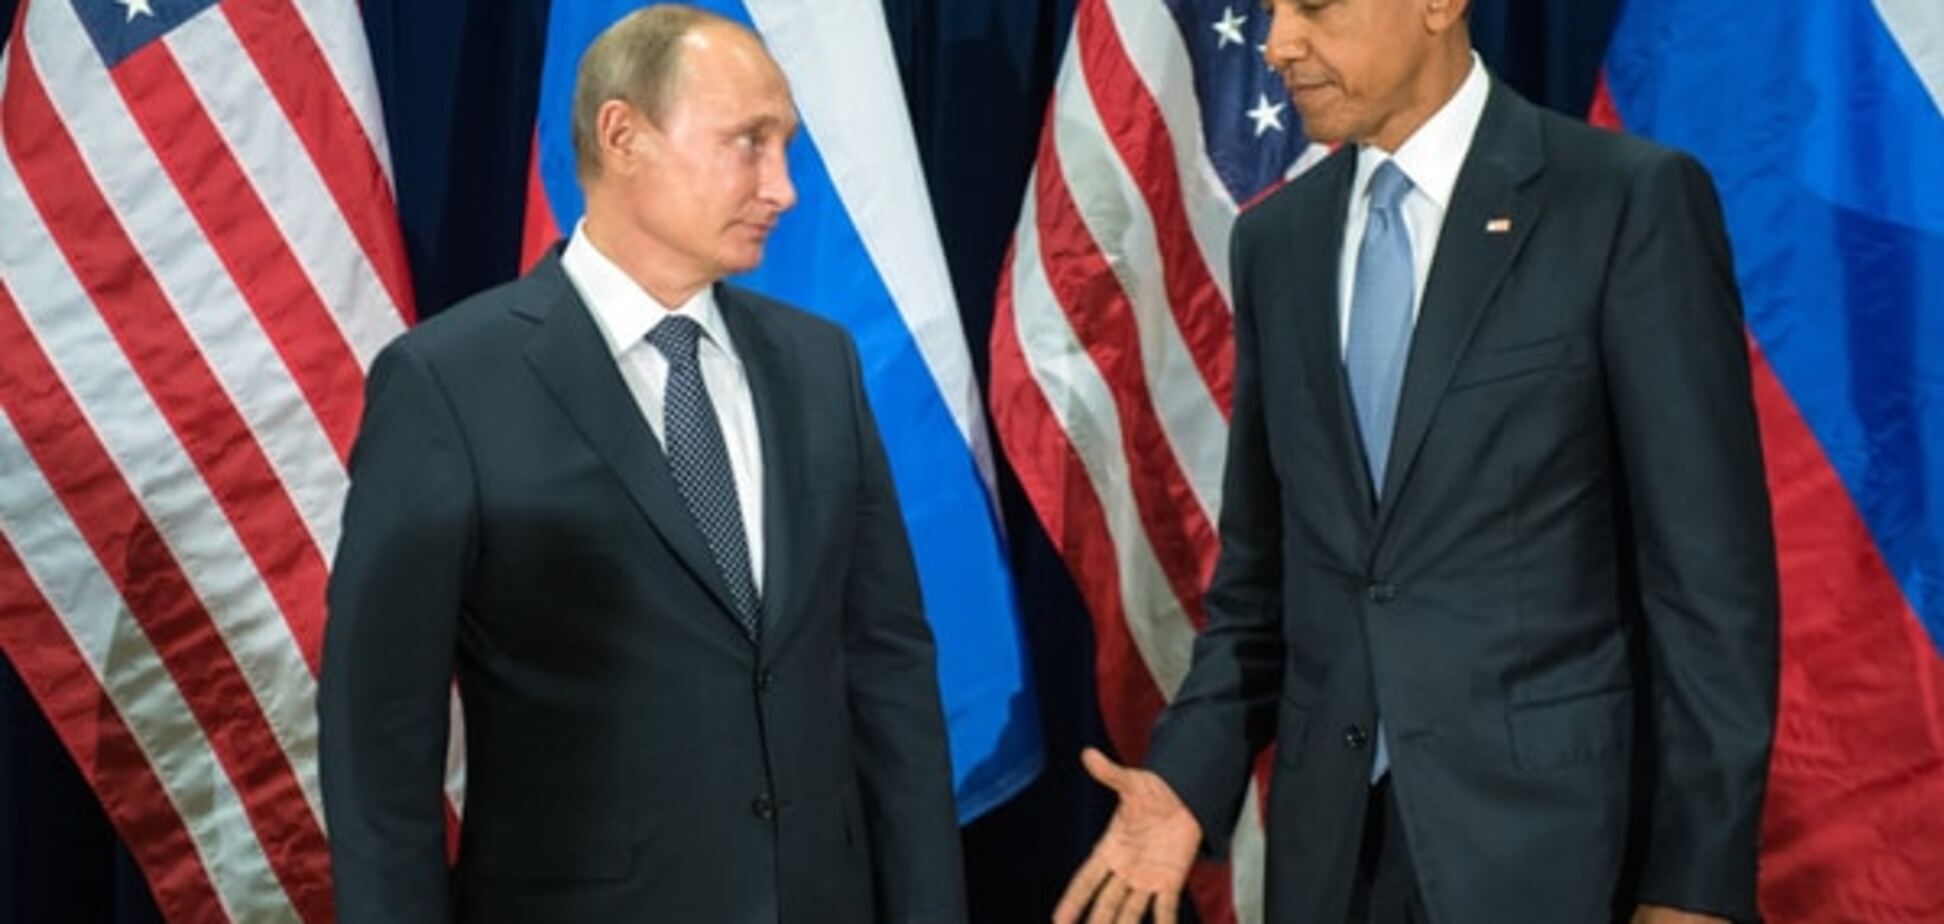 Знайди відмінності: як Путін і Обама трактують події в Україні та в Сирії